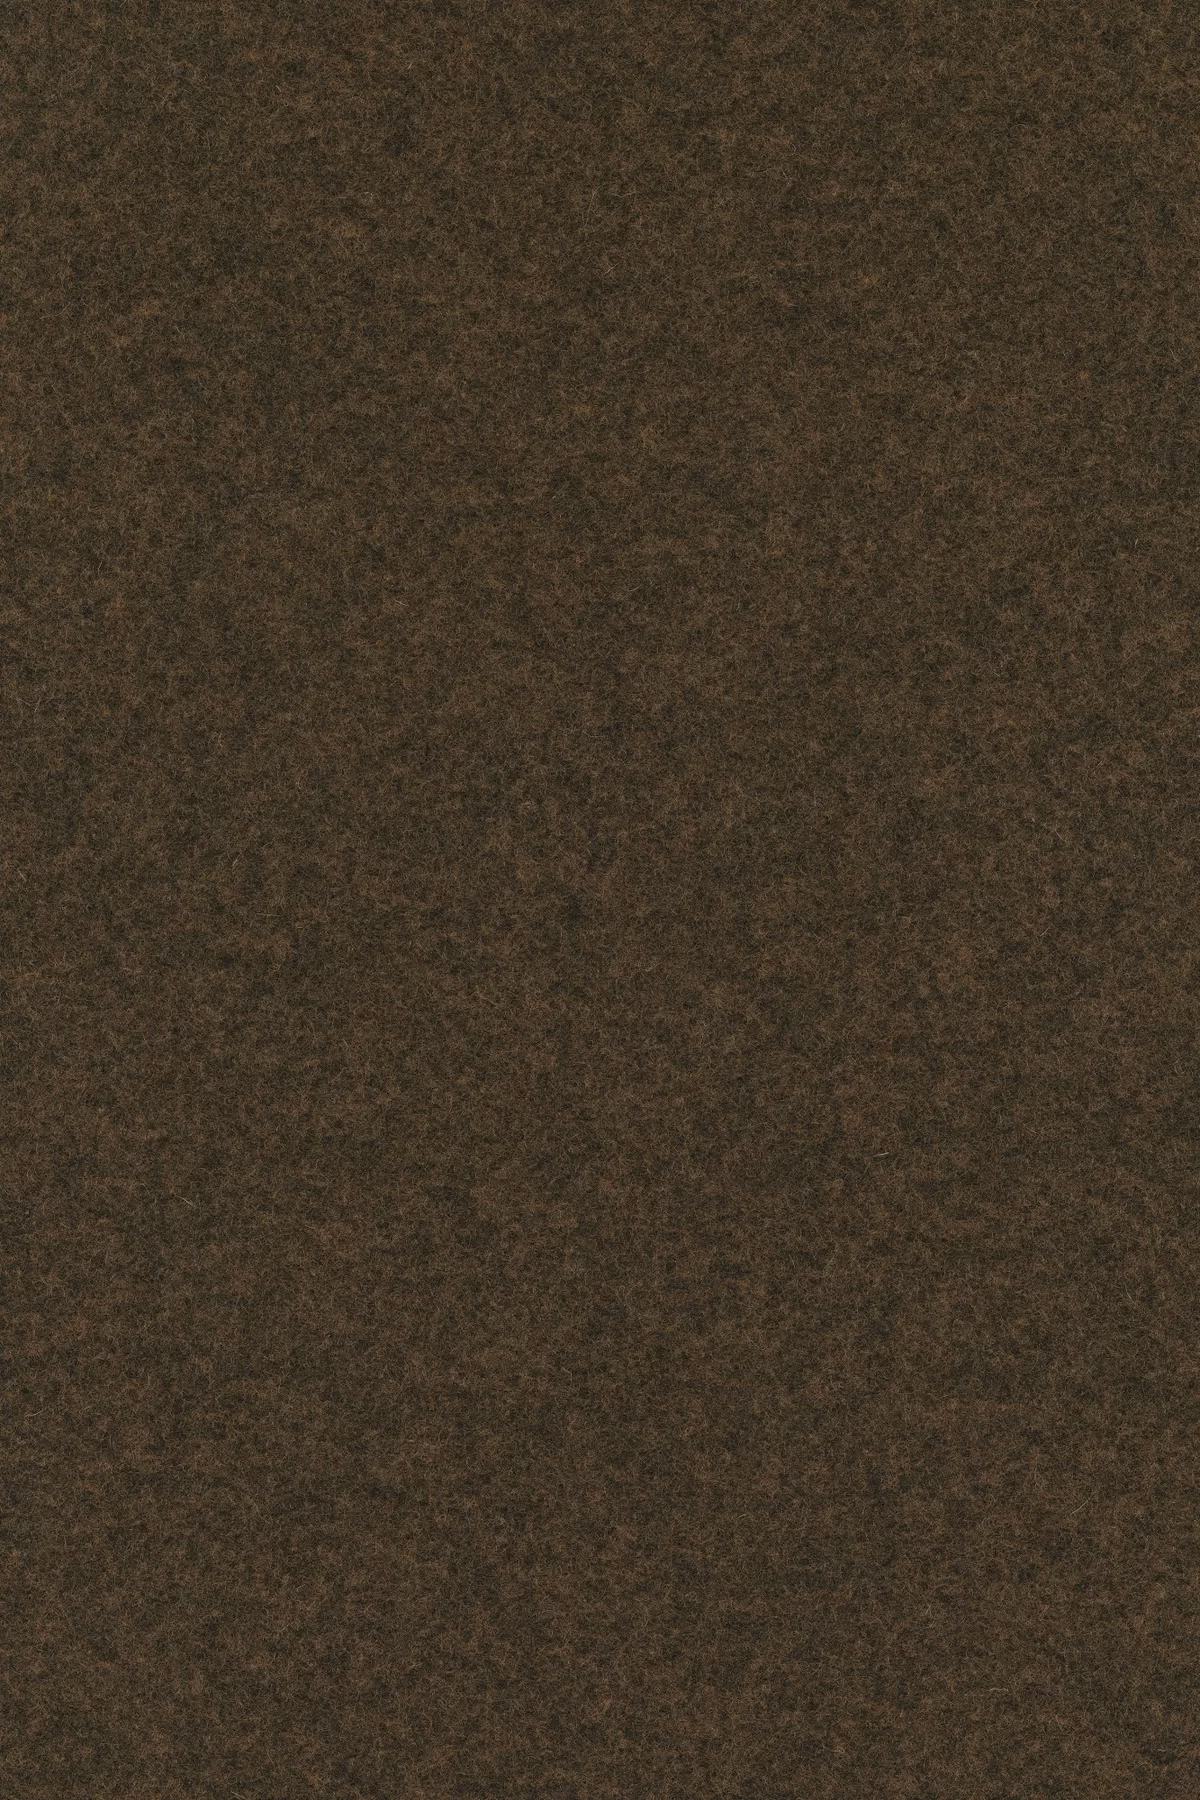 Fabric sample Divina Melange 3 367 brown